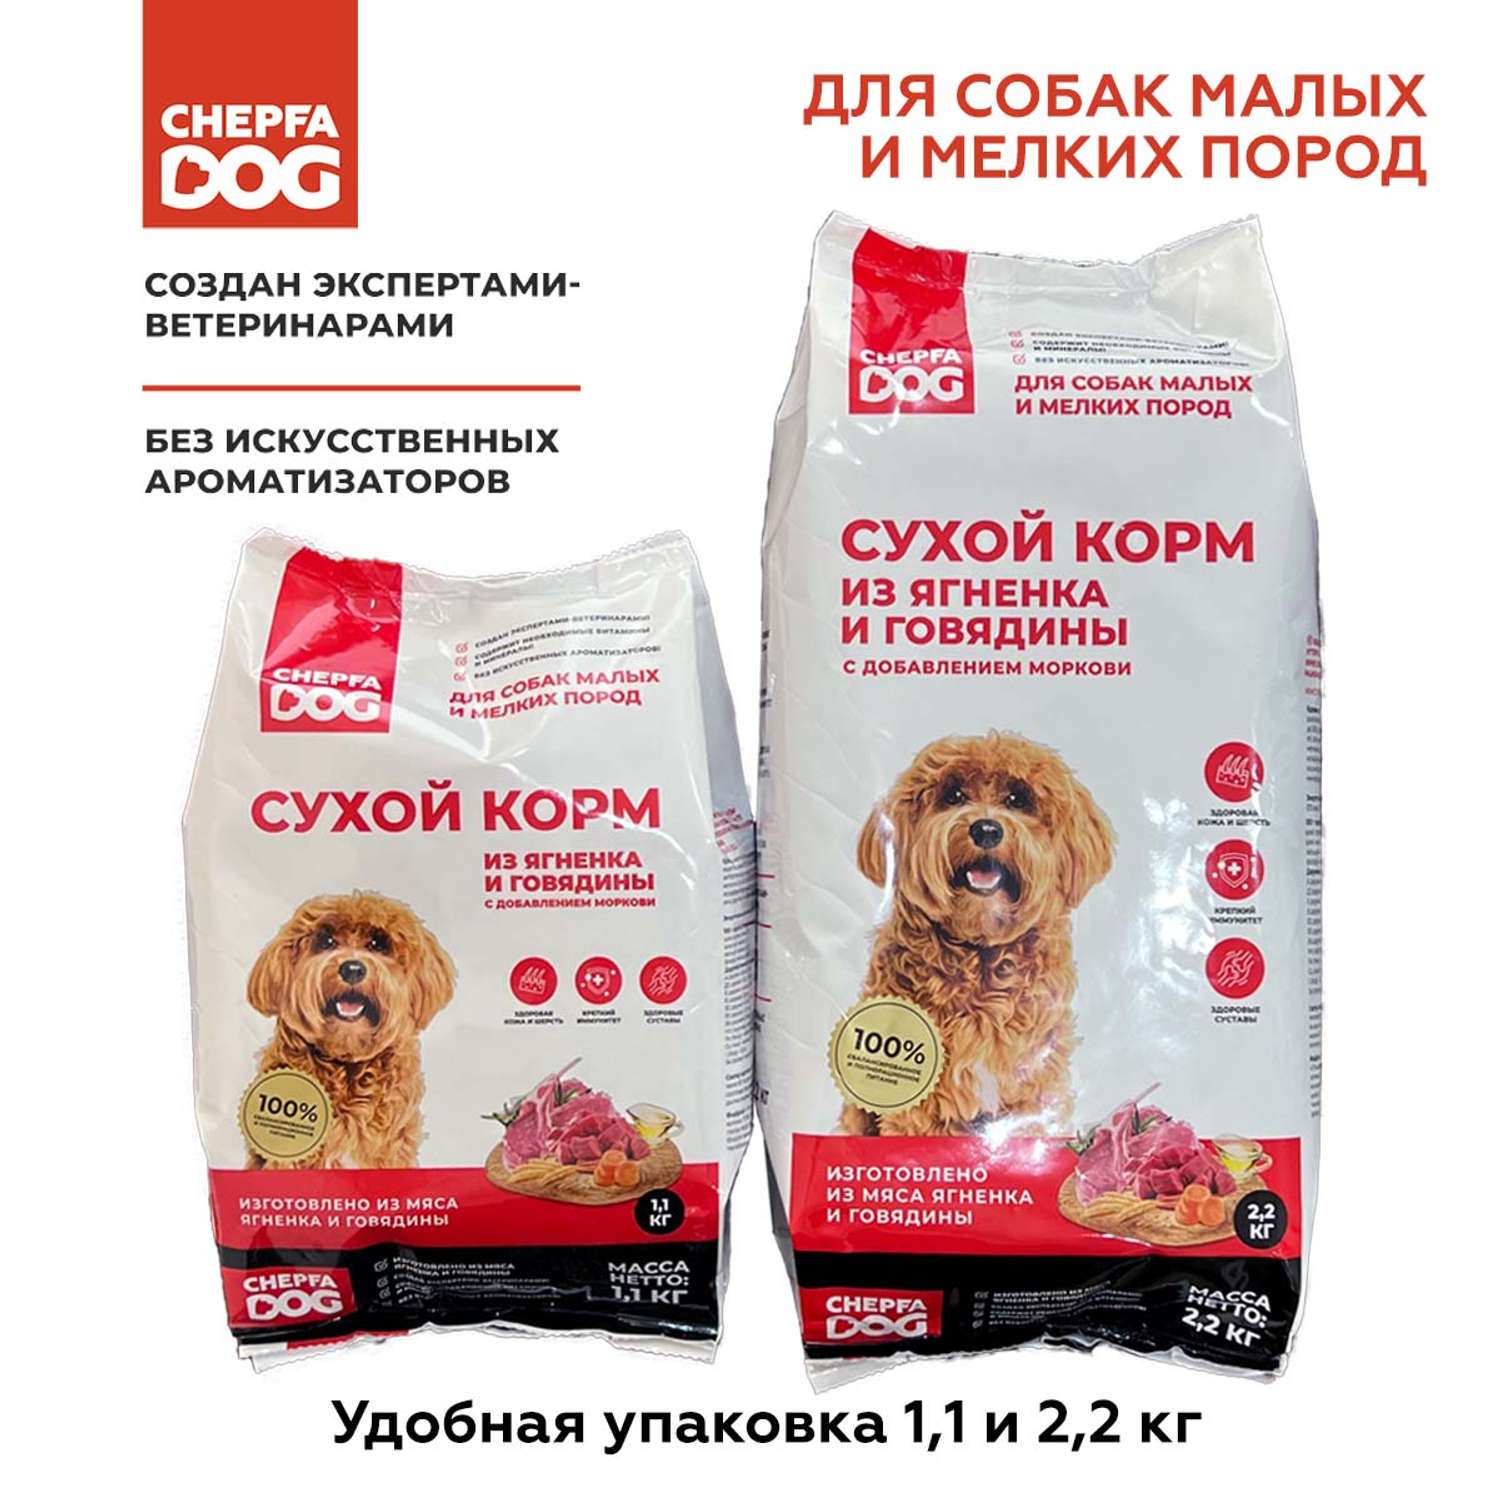 Сухой корм Chepfa Dog полнорационный ягненок и говядина 1.1 кг для взрослых собак малых и мелких пород - фото 7